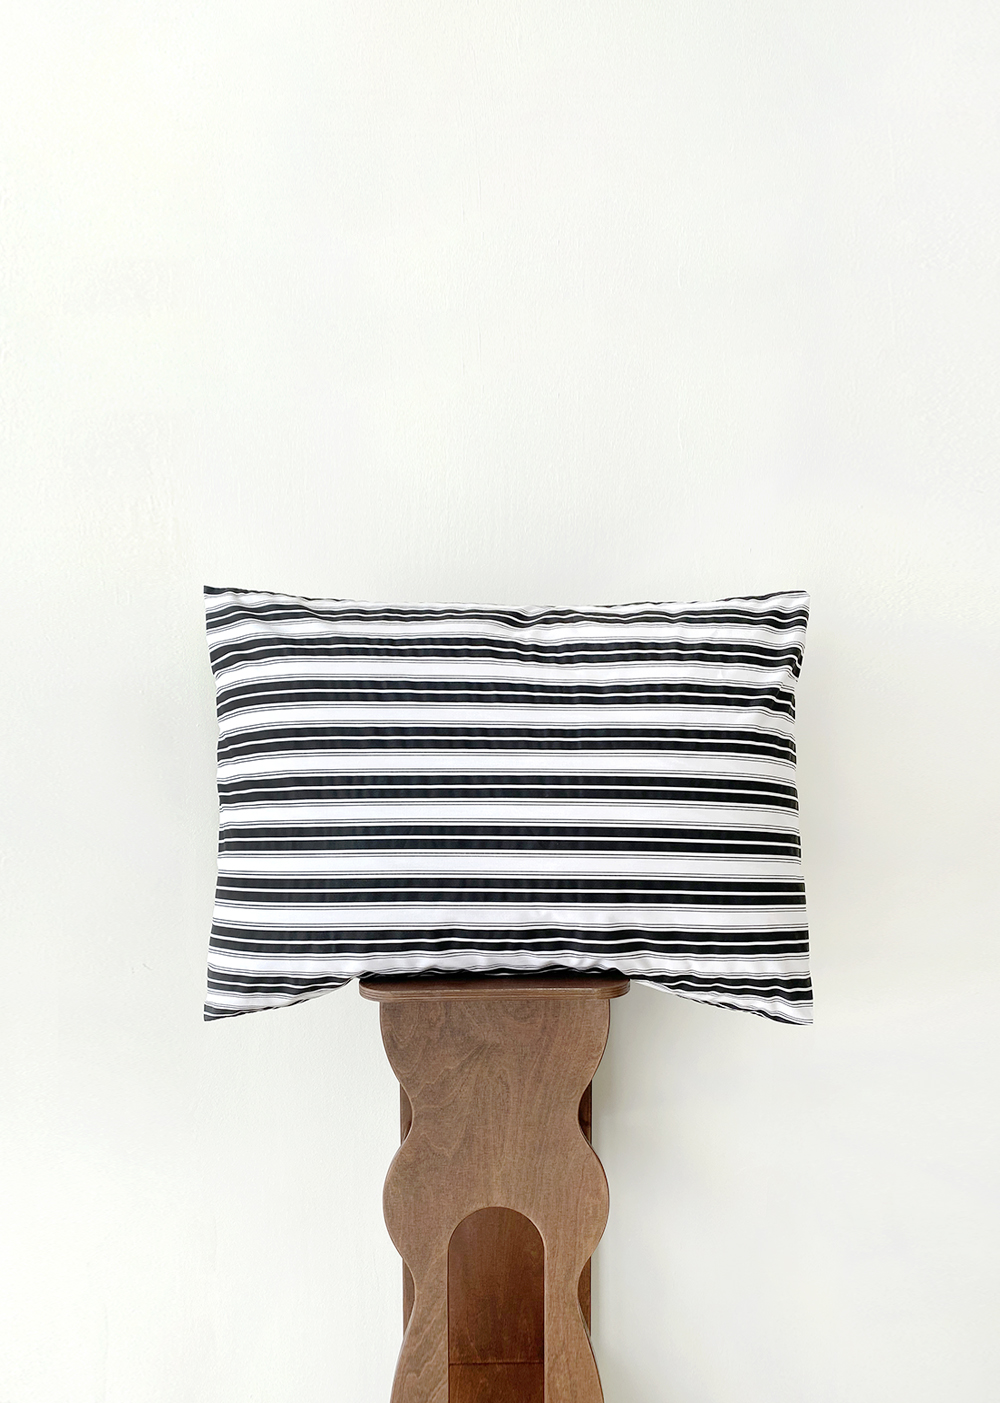 Alternate stripe pillow cover - black